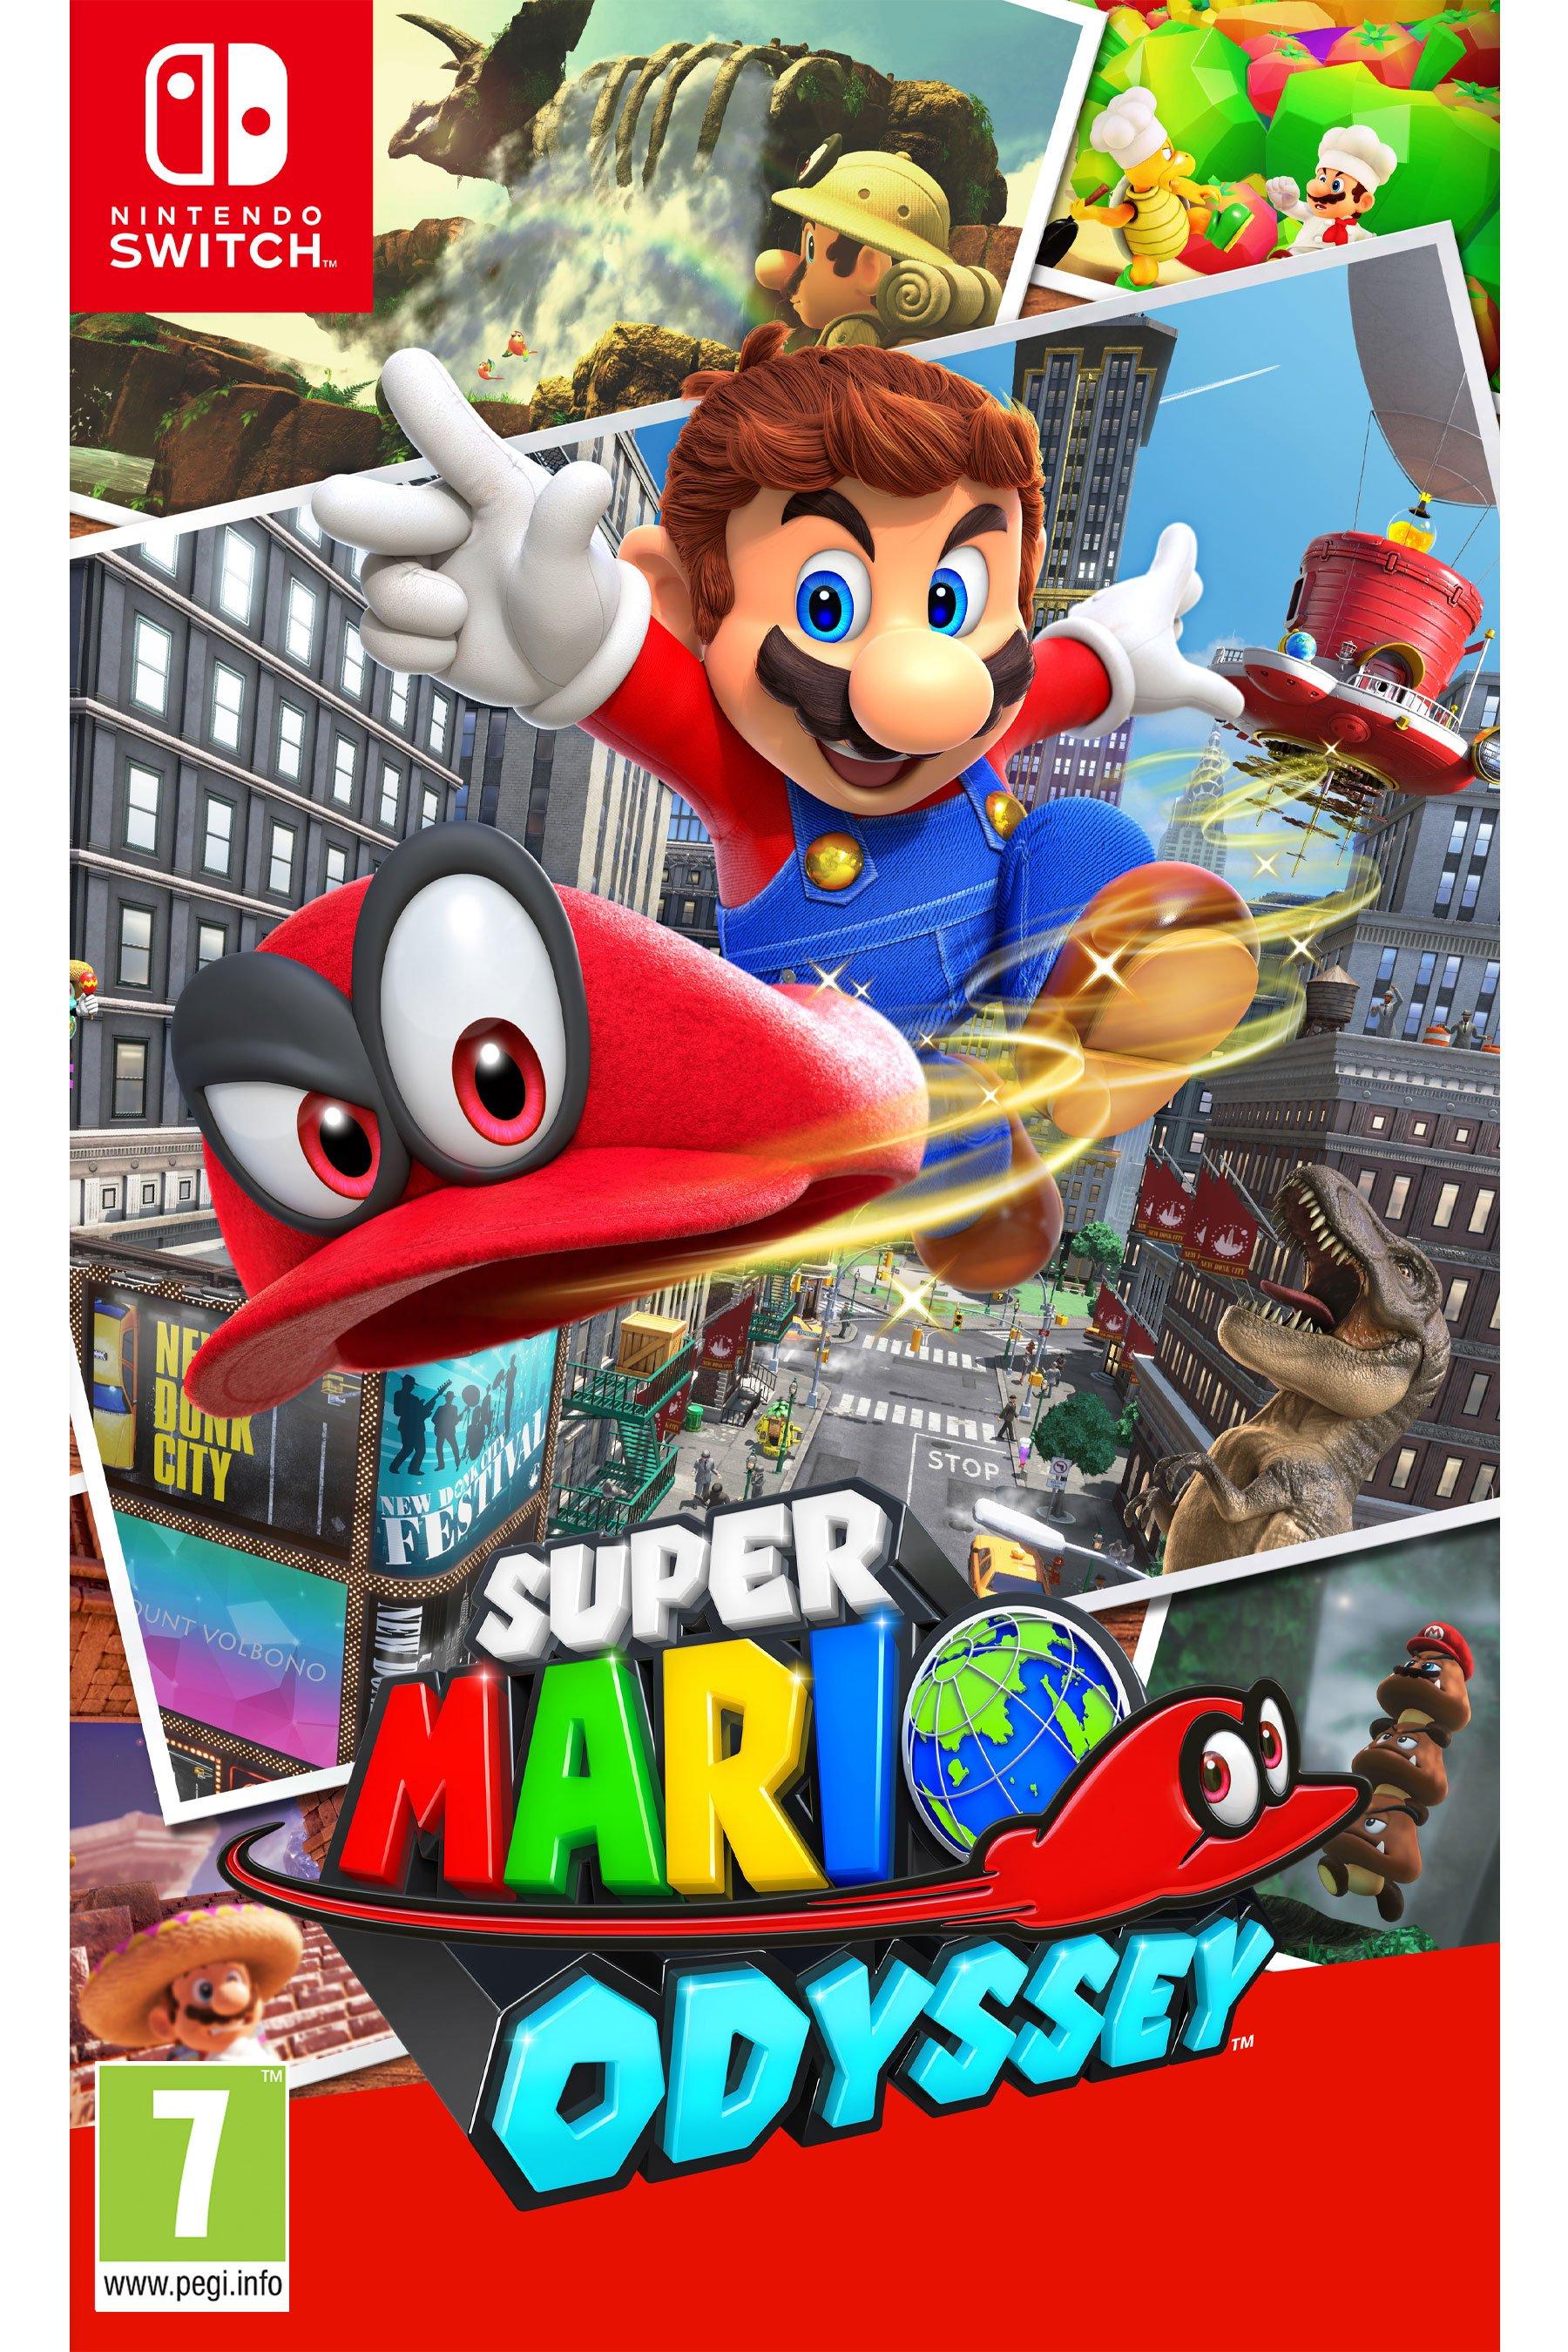 Collage Super Mario Odyssey Maxi Poster, Plastic/Glass, Multi-Colour, 61 x  91.5 x 1.3 cm